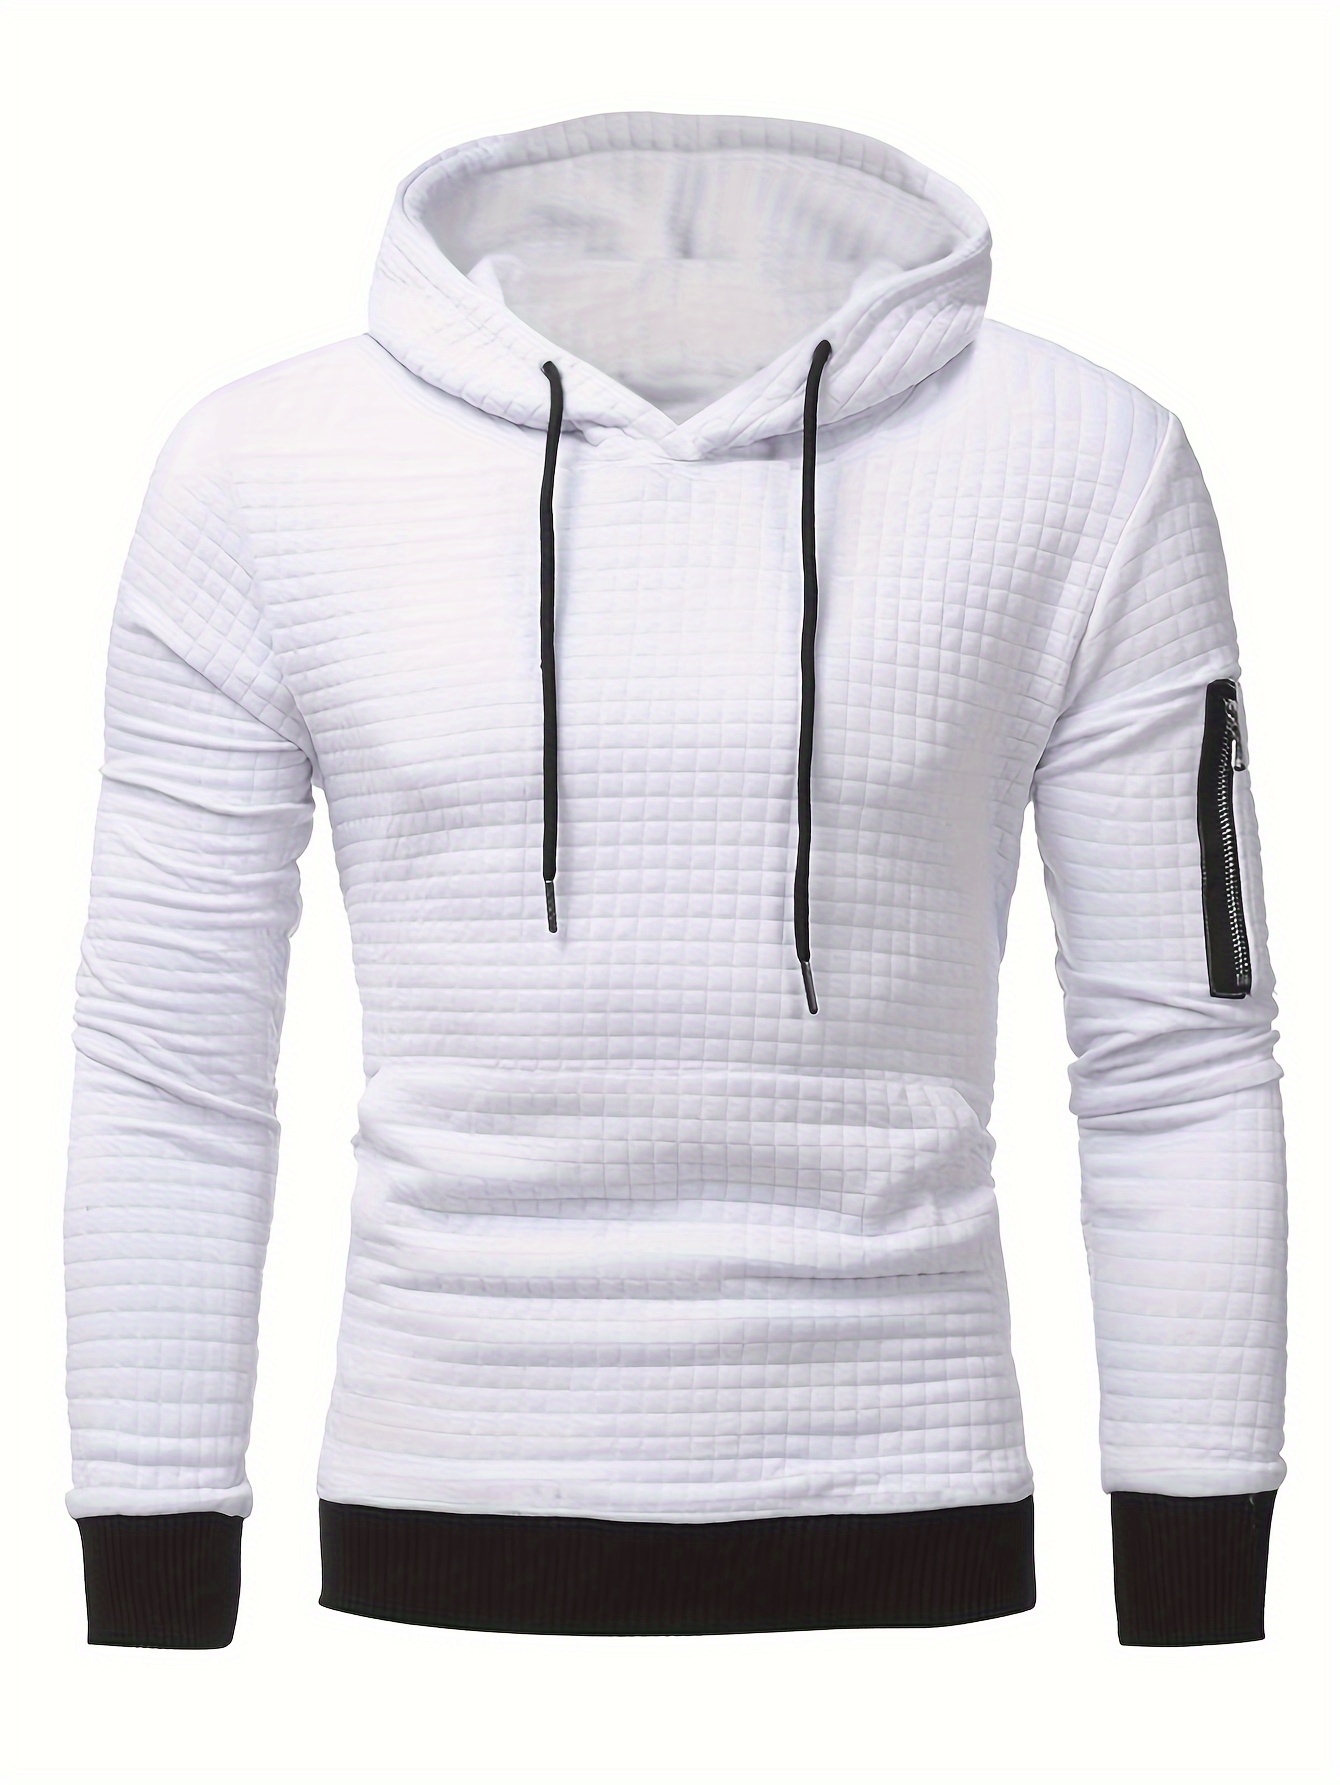 Color Block Hoodies for Men Regular Fit Long Sleeve Fishing Hoodies  Sweatshirt Kangaroo Pocket Casual Pullover Sportwear